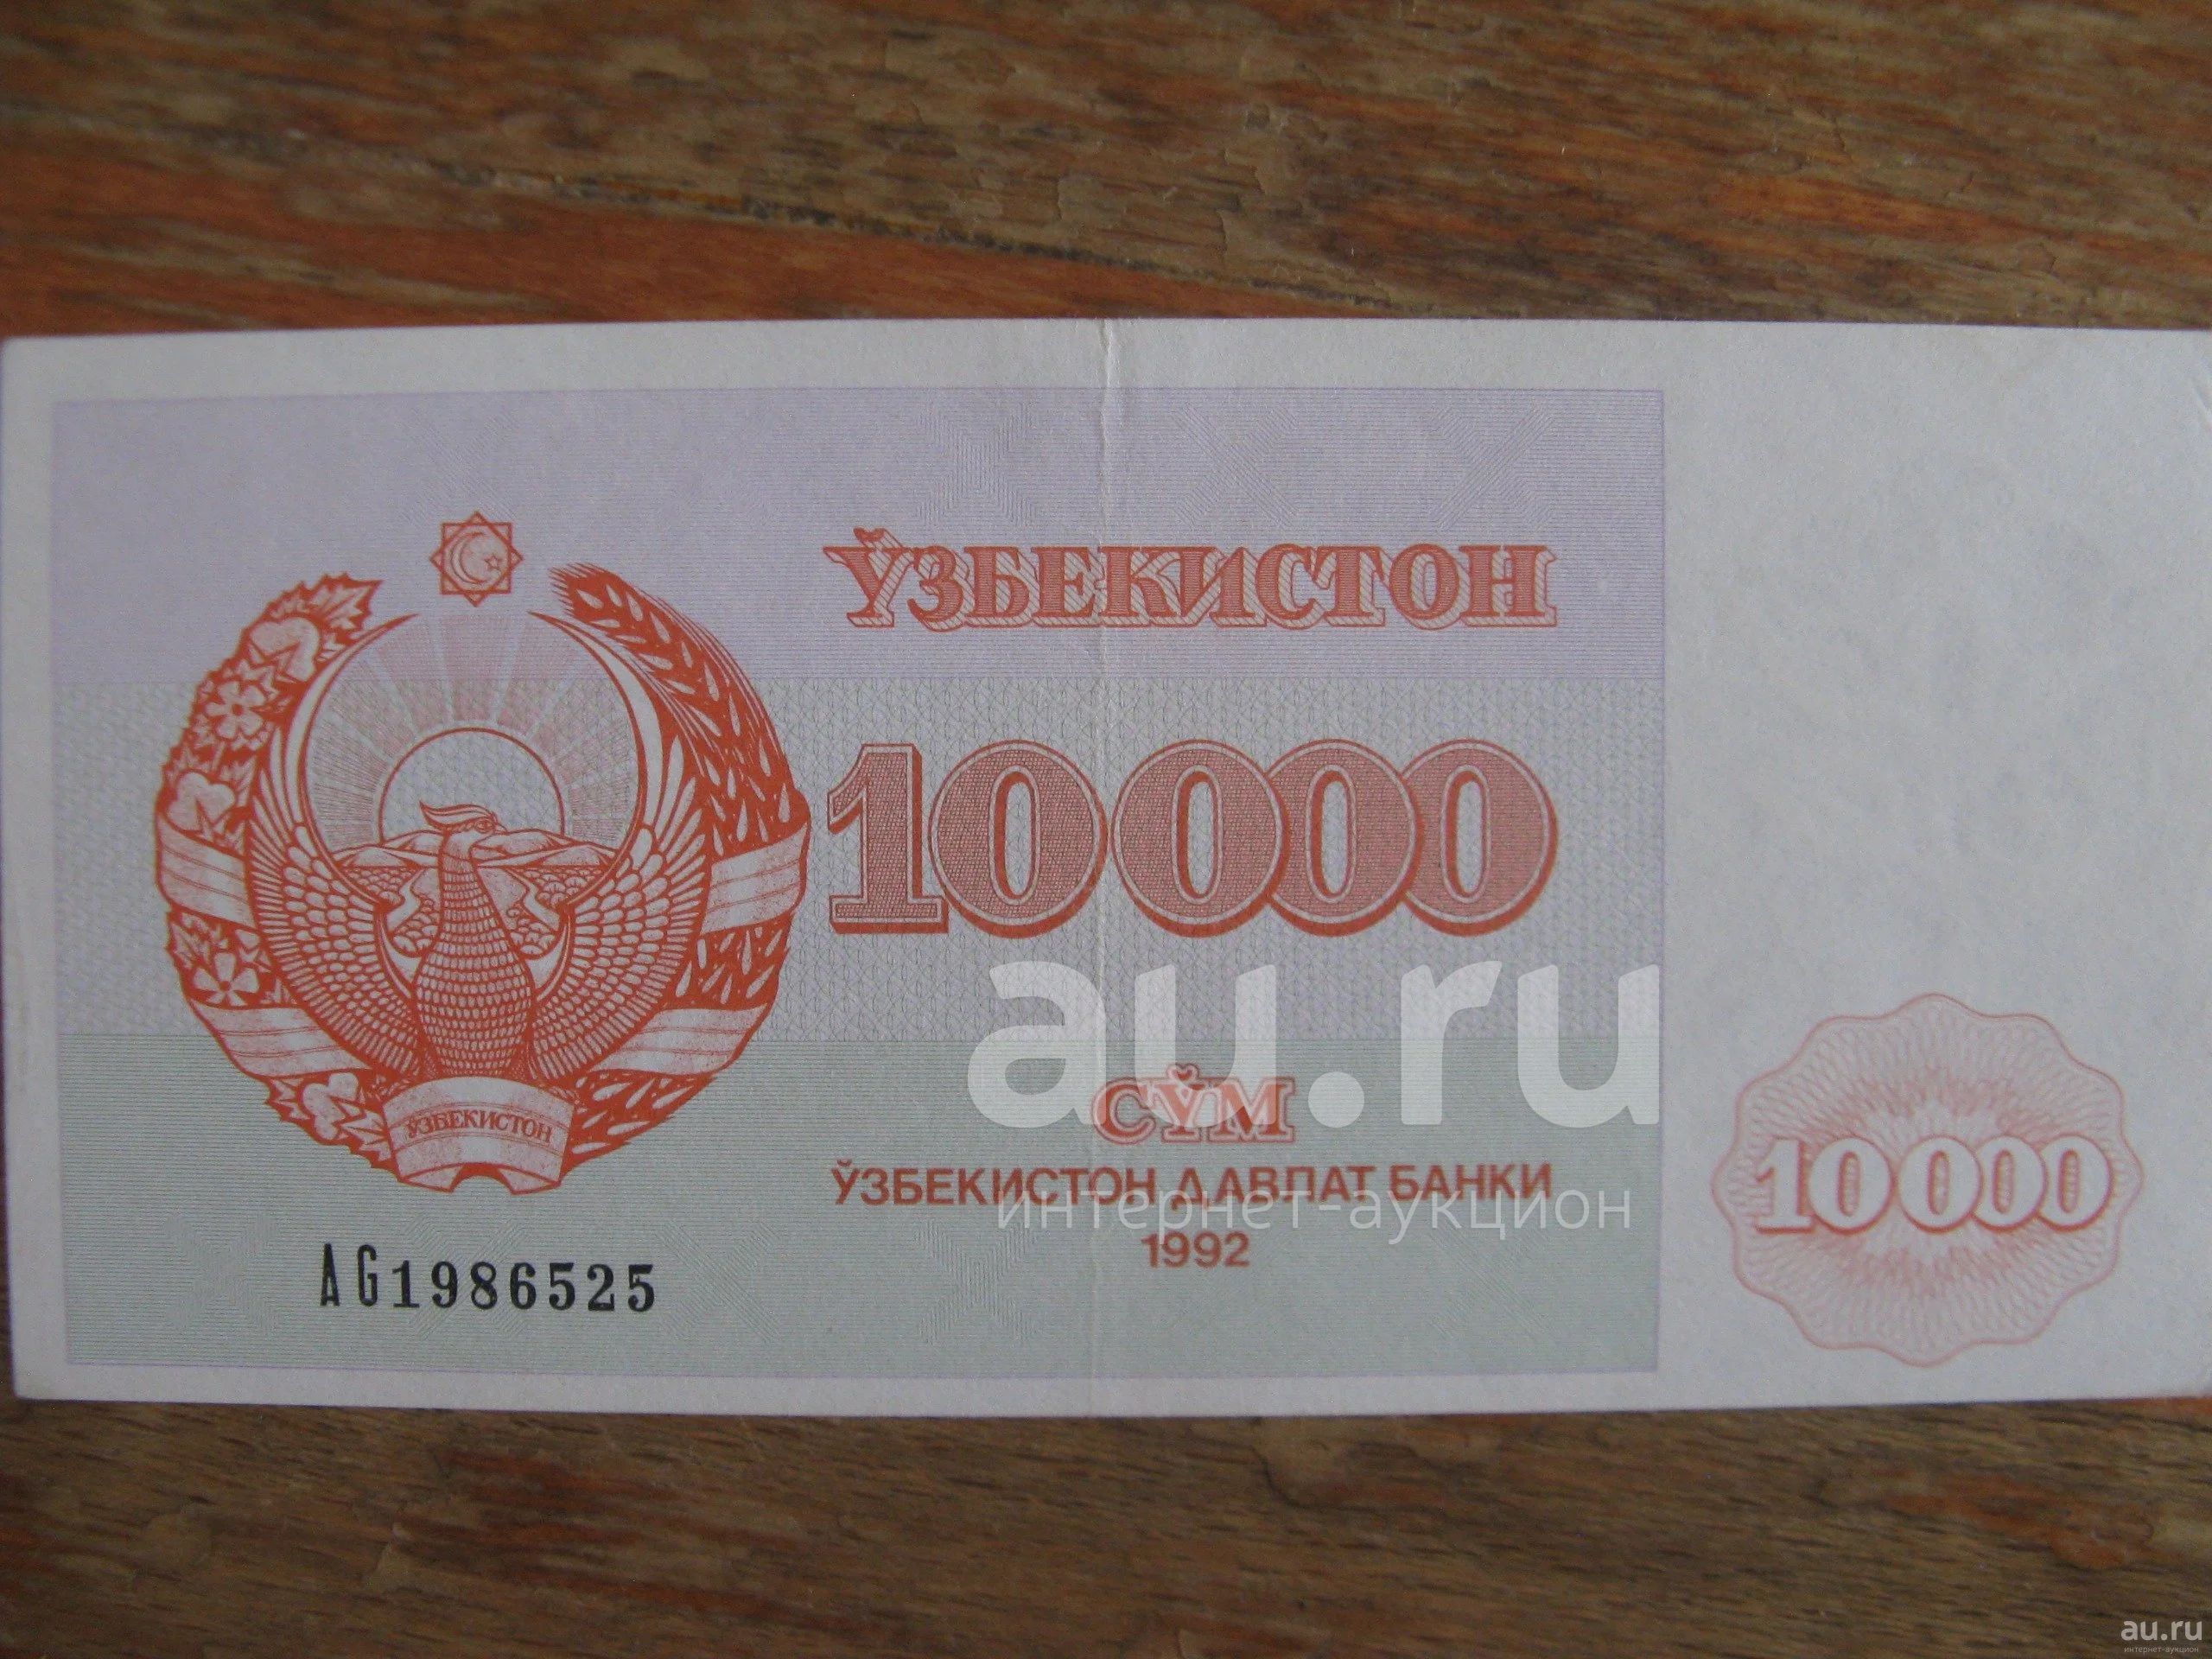 Конверт с сумой 10000 рублей. Сколько стоит 10000 сум в рублях.